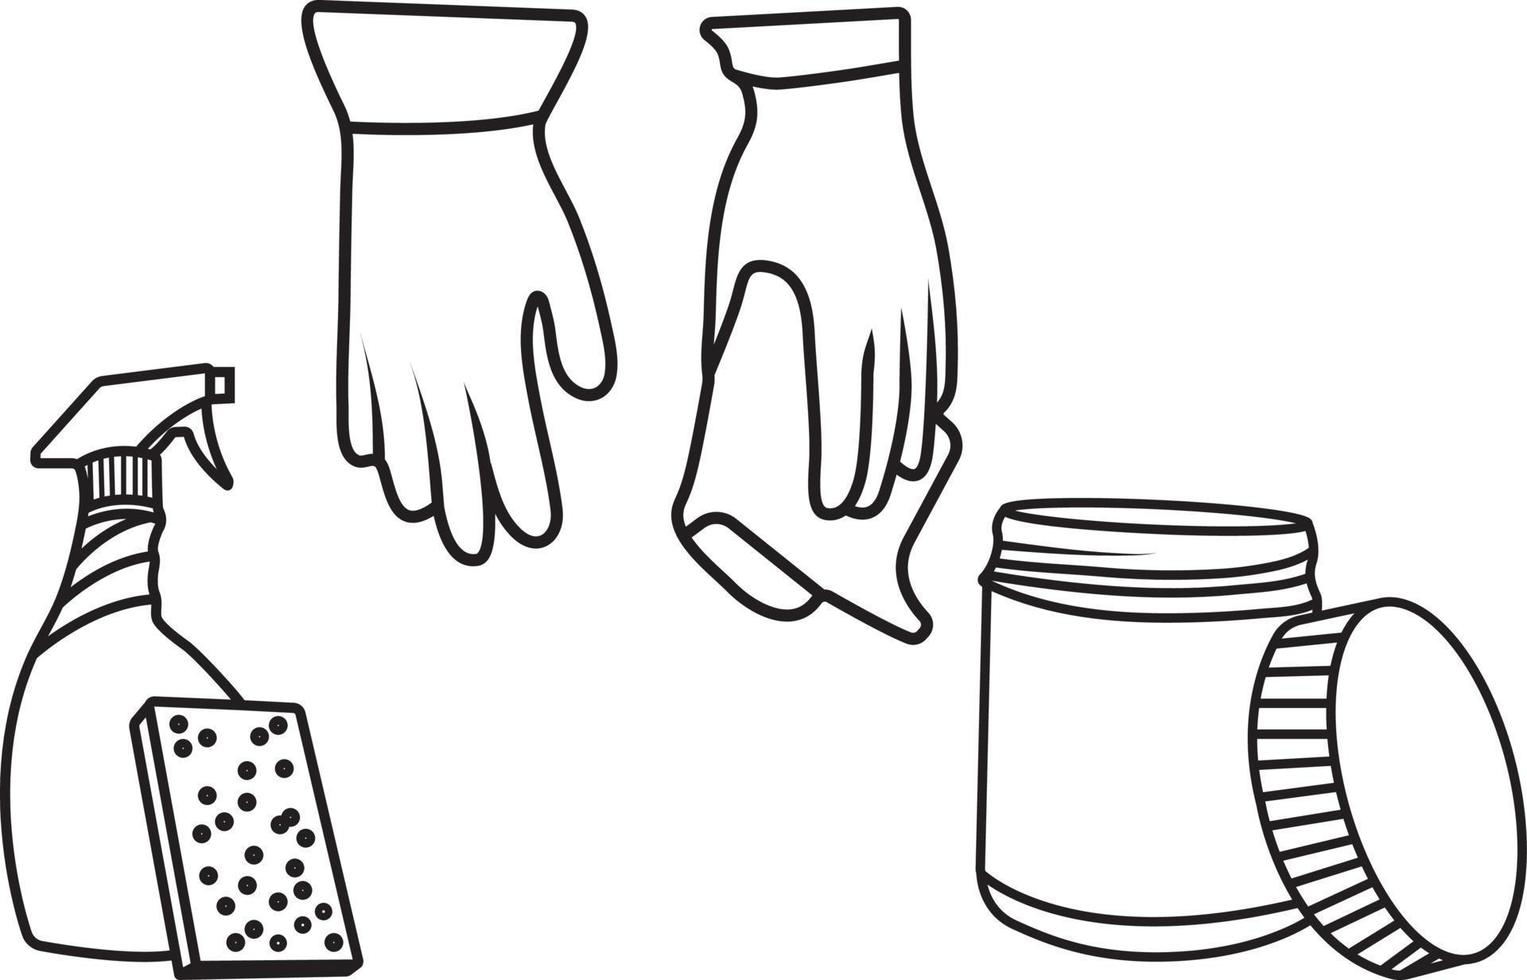 handskar spray flaska, skrubba, och rengöring burk isolerat på vit. vektor illustration